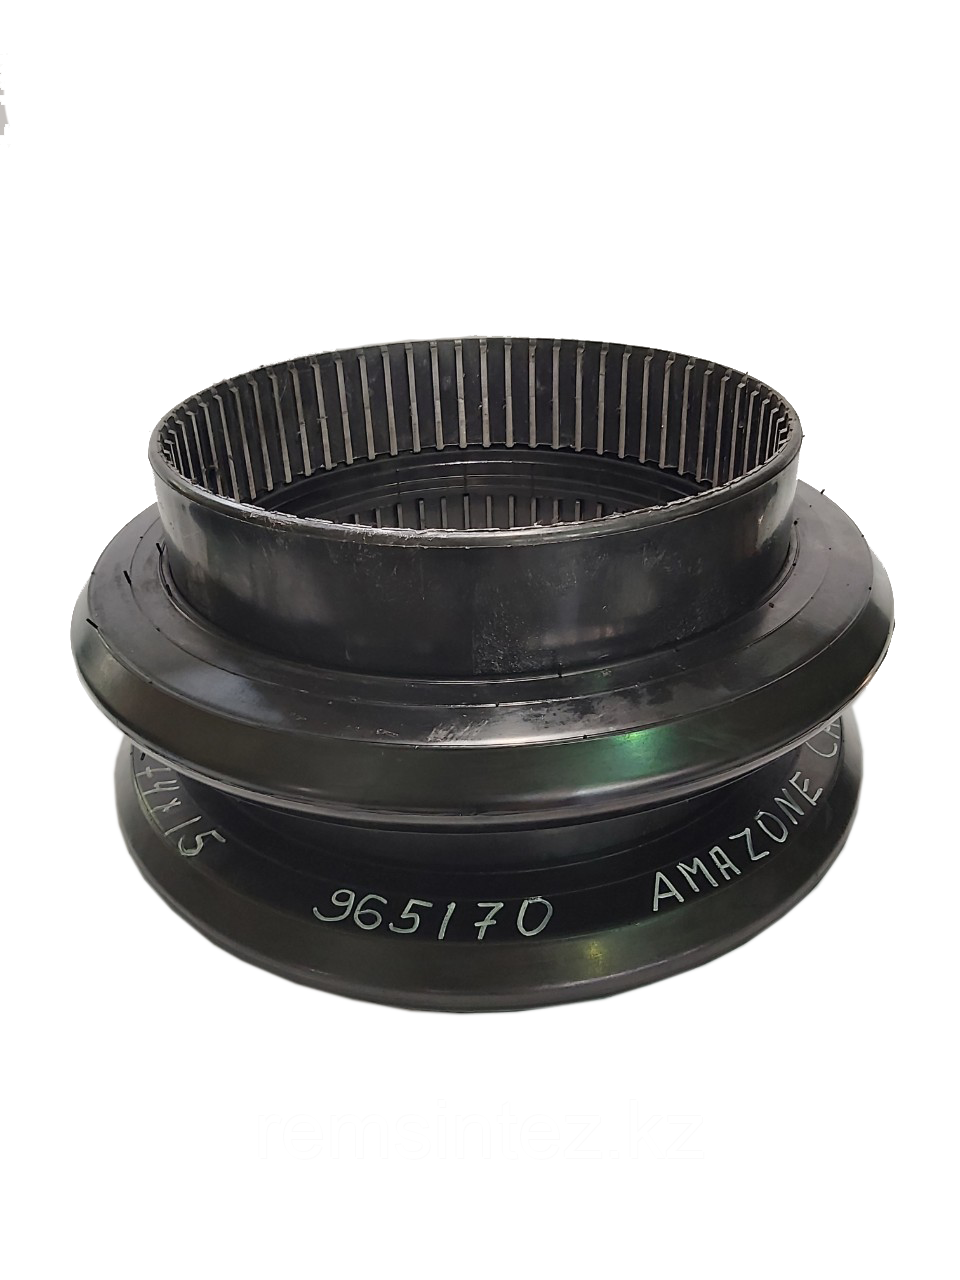 Бандаж (колесо-каток) 580x74x15 резино-клинового катка дисковой бороны 965170, AMAZONE CATROS